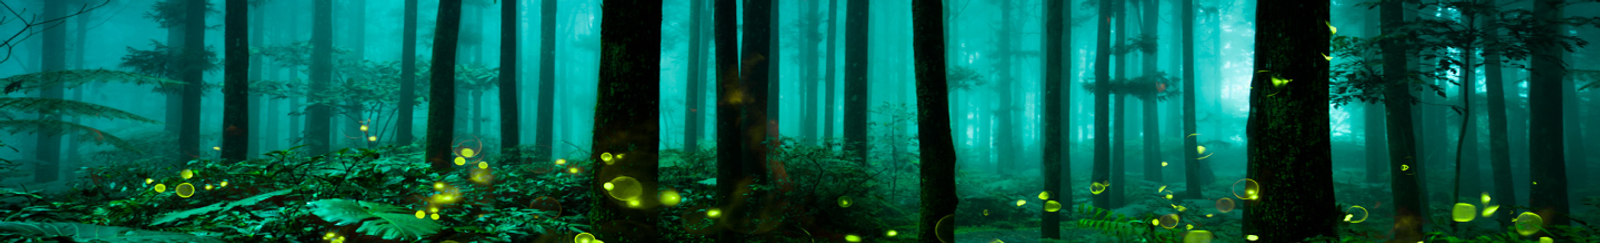 Summer Forest Fireflies